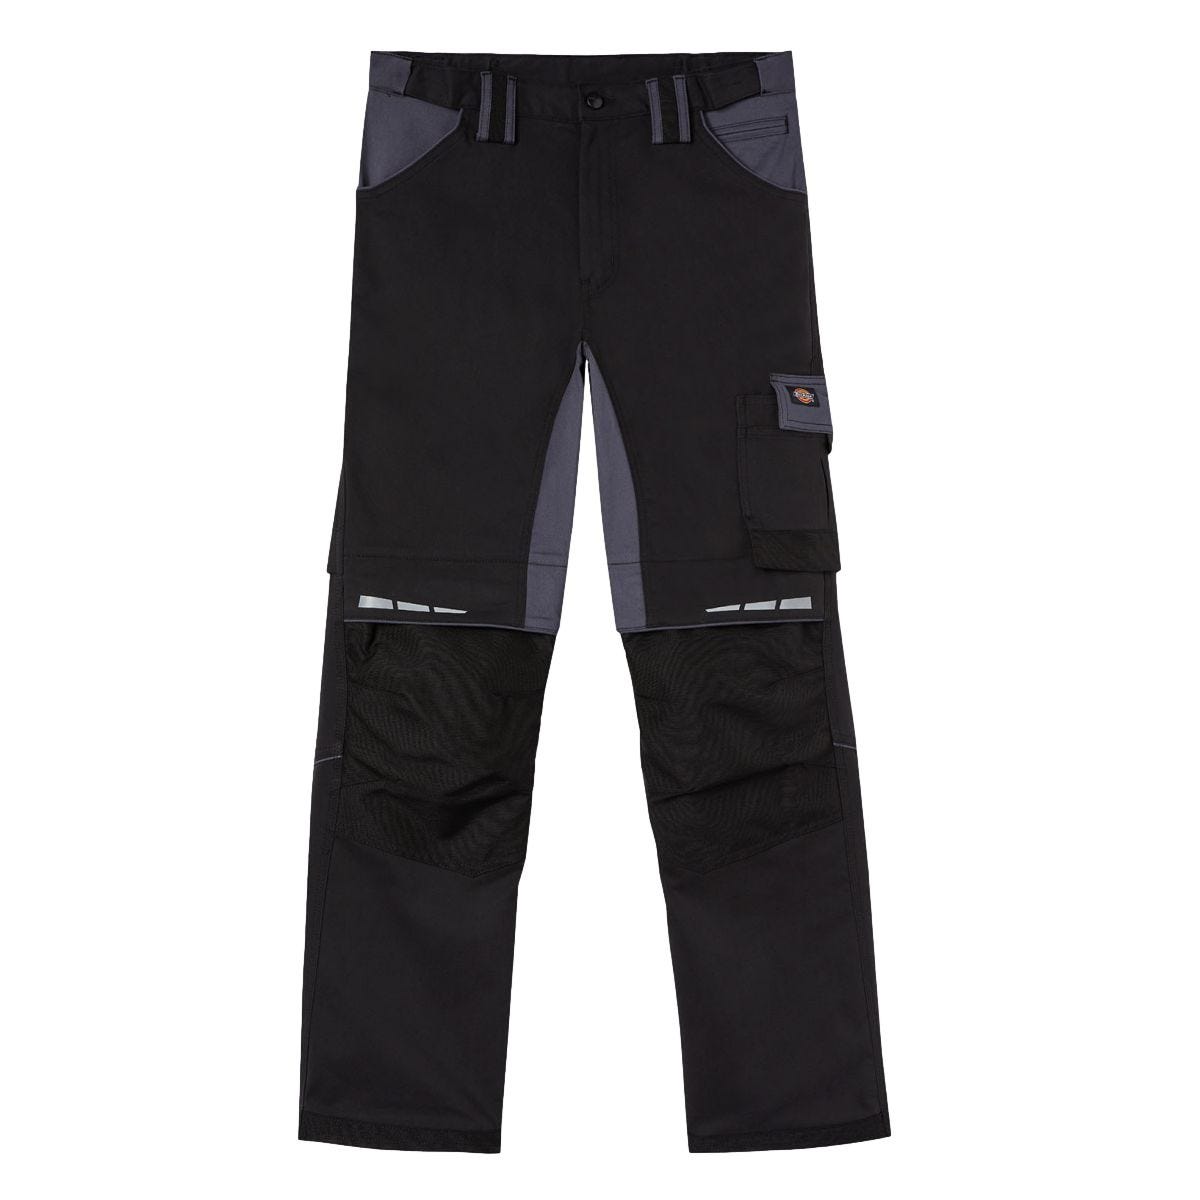 Pantalon de travail GDT Premium noir/gris - Dickies - Taille 44 2